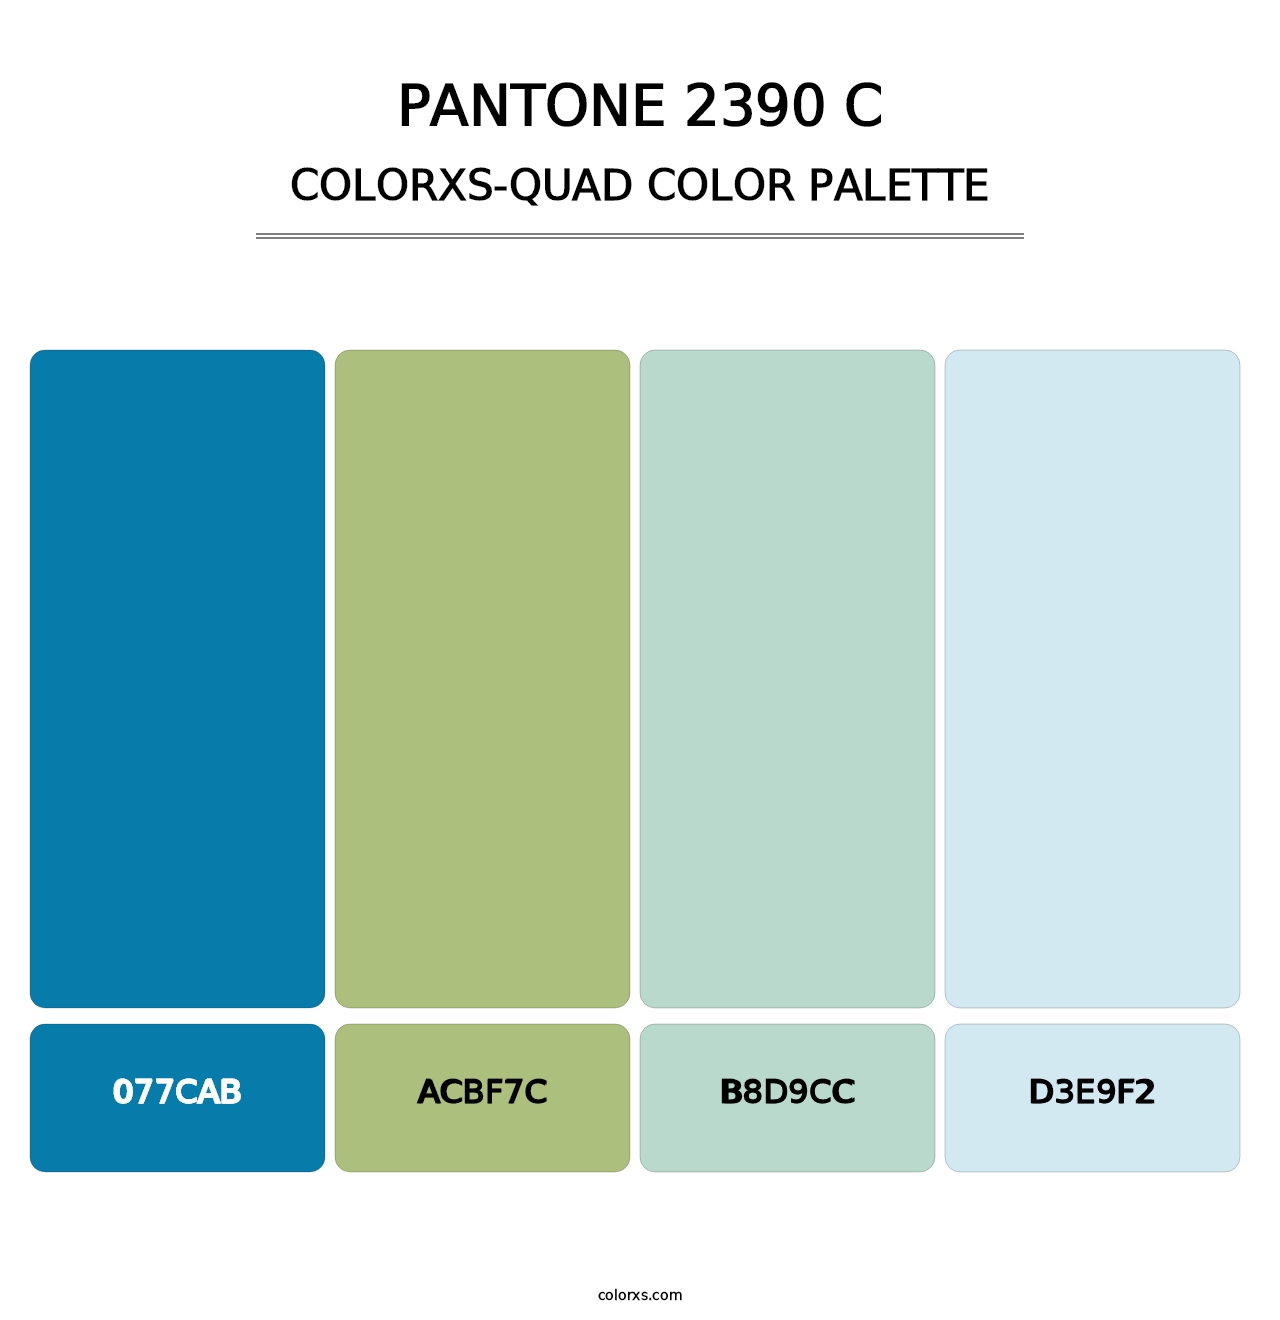 PANTONE 2390 C - Colorxs Quad Palette